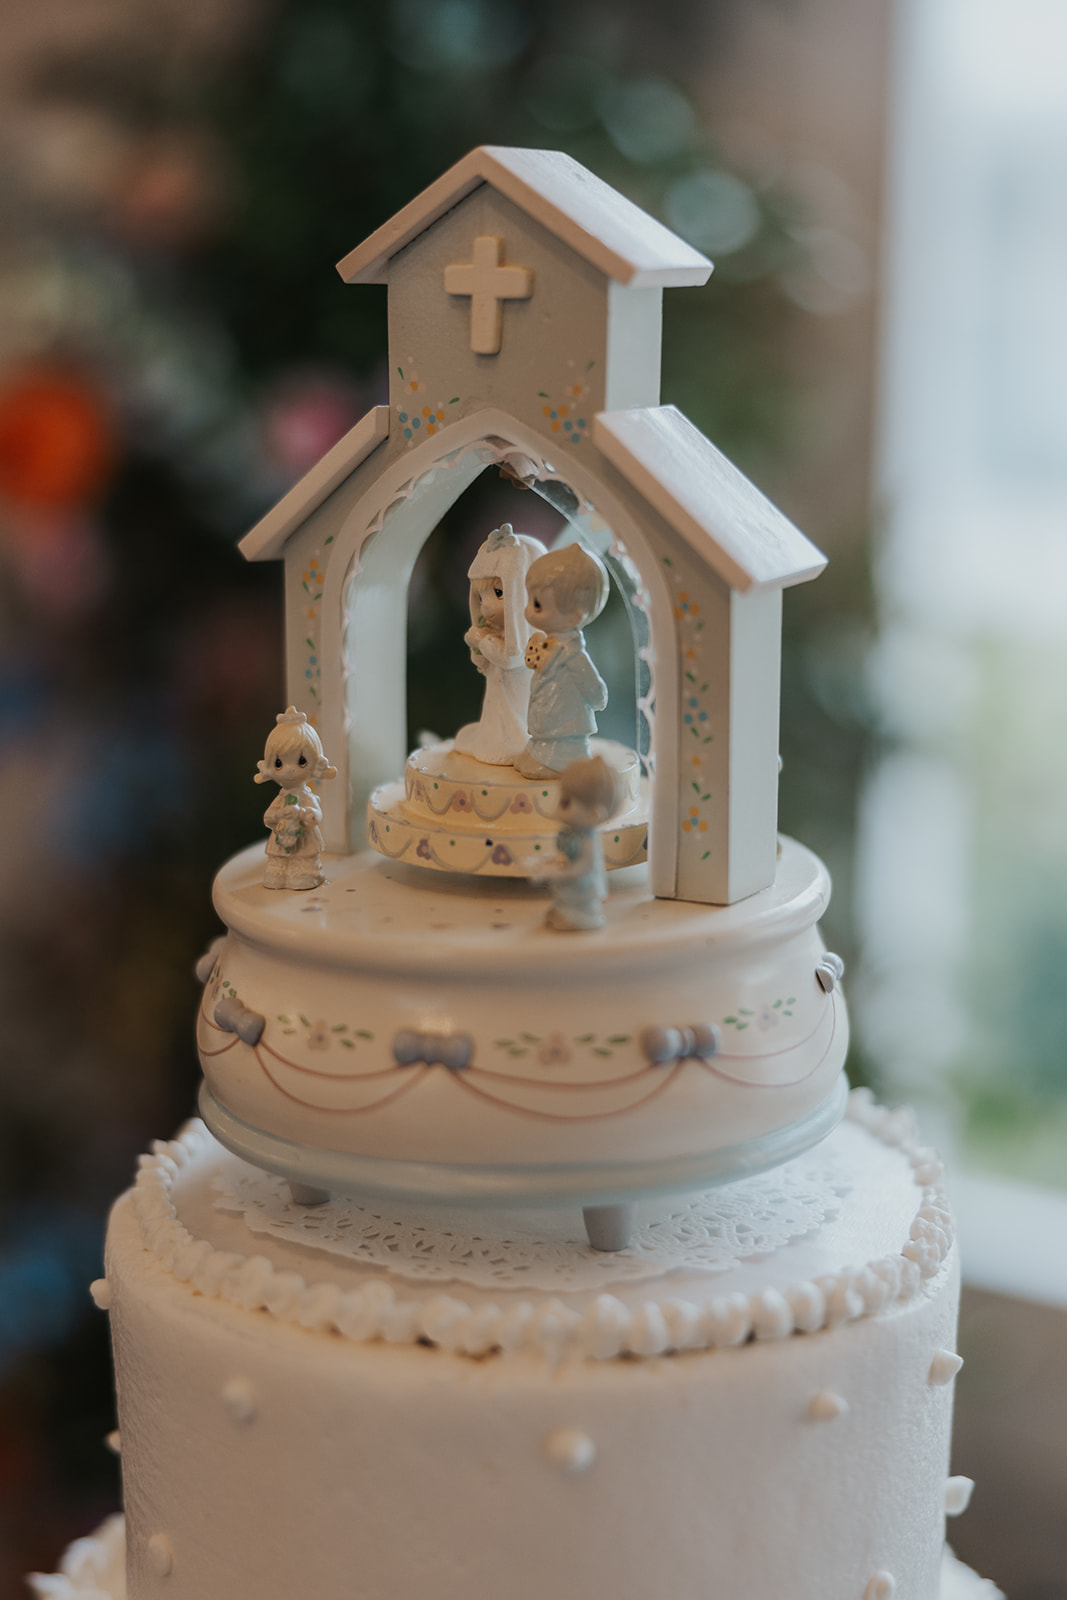 Adorable wedding cake topper